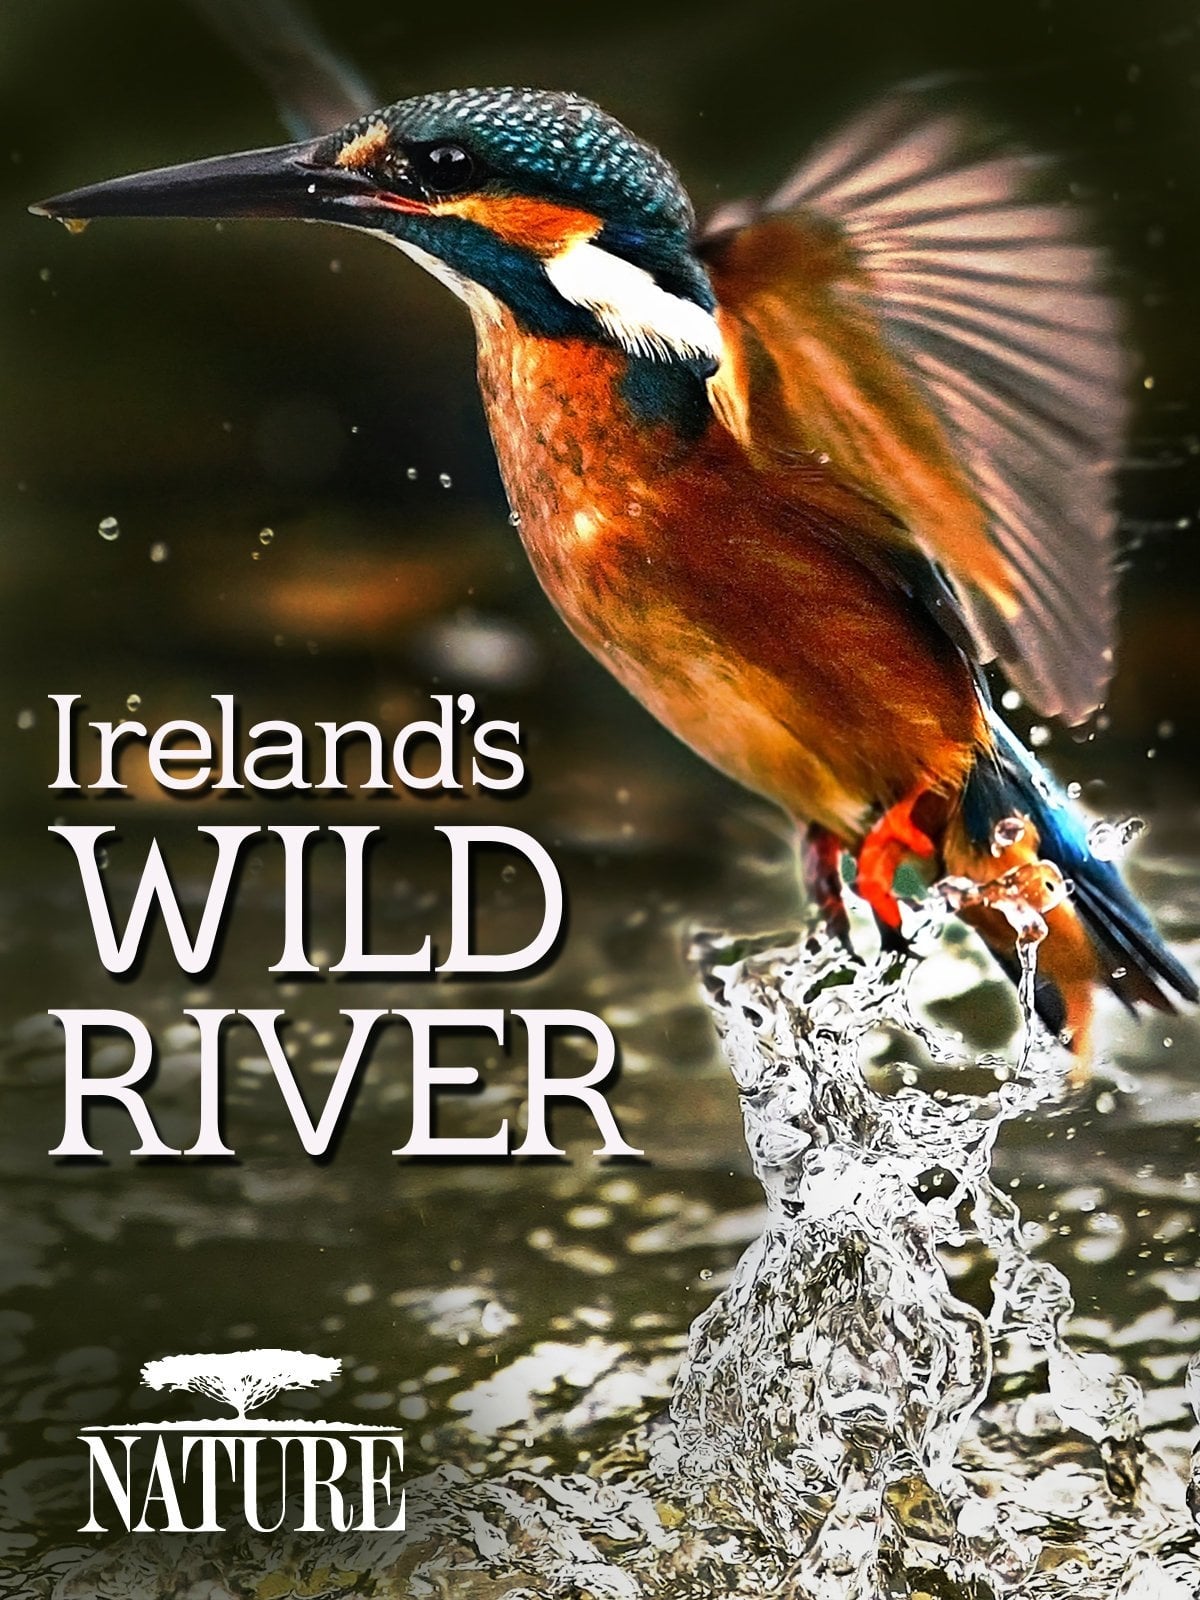 Ireland's Wild River